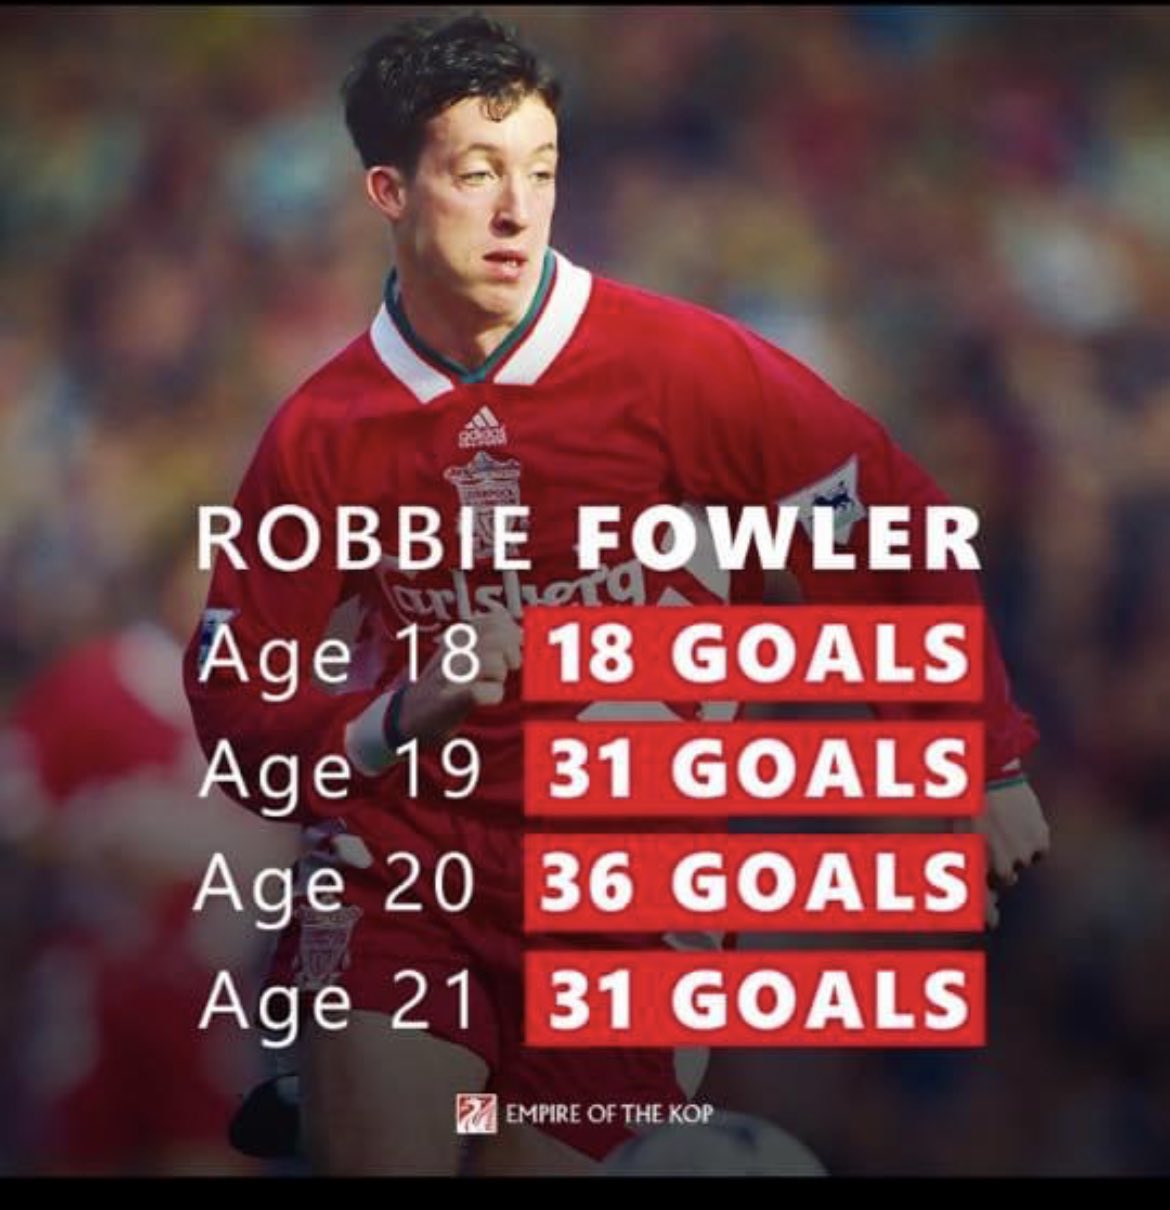 Happy birthday to the legend Robbie Fowler, god       